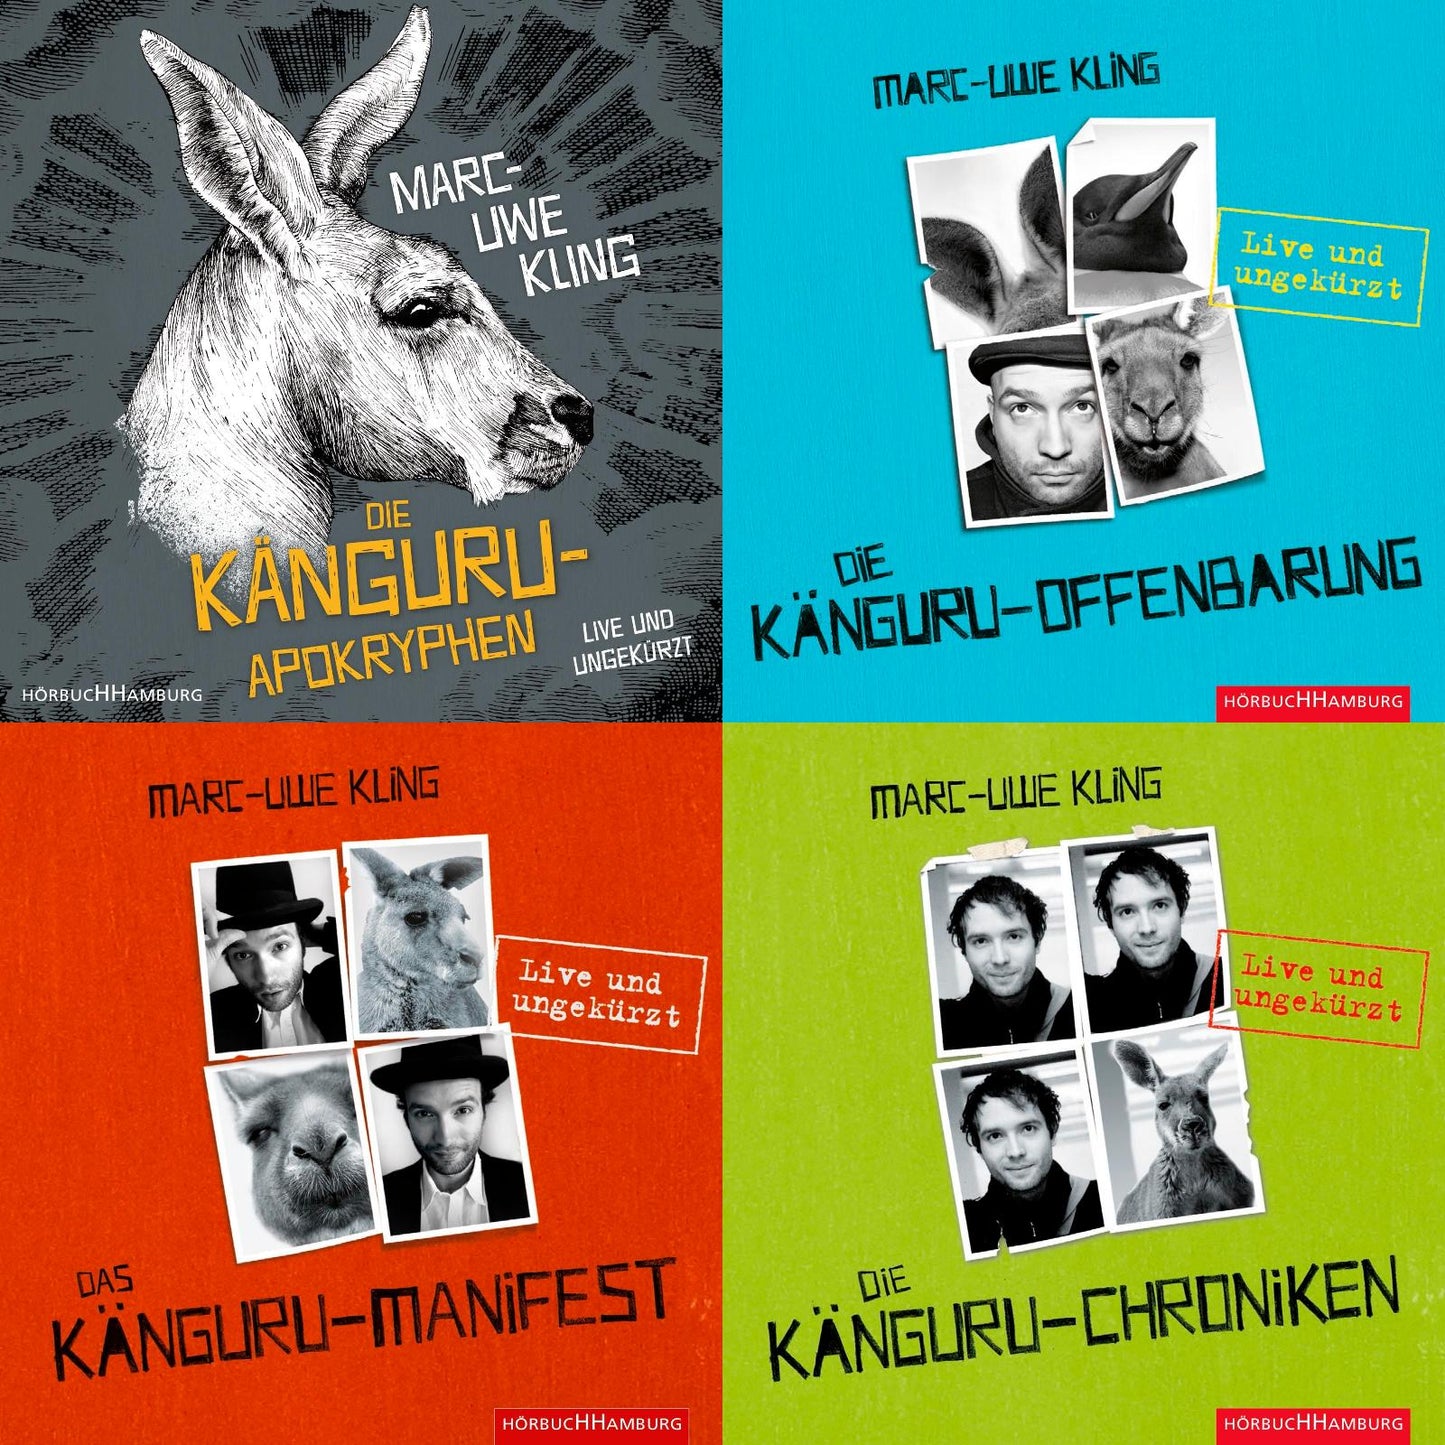 Marc-Uwe Kling Die Känguru-Reihe 4x als Hörbuch (18 CD´s im Set) + 1 exklusives Postkartenset